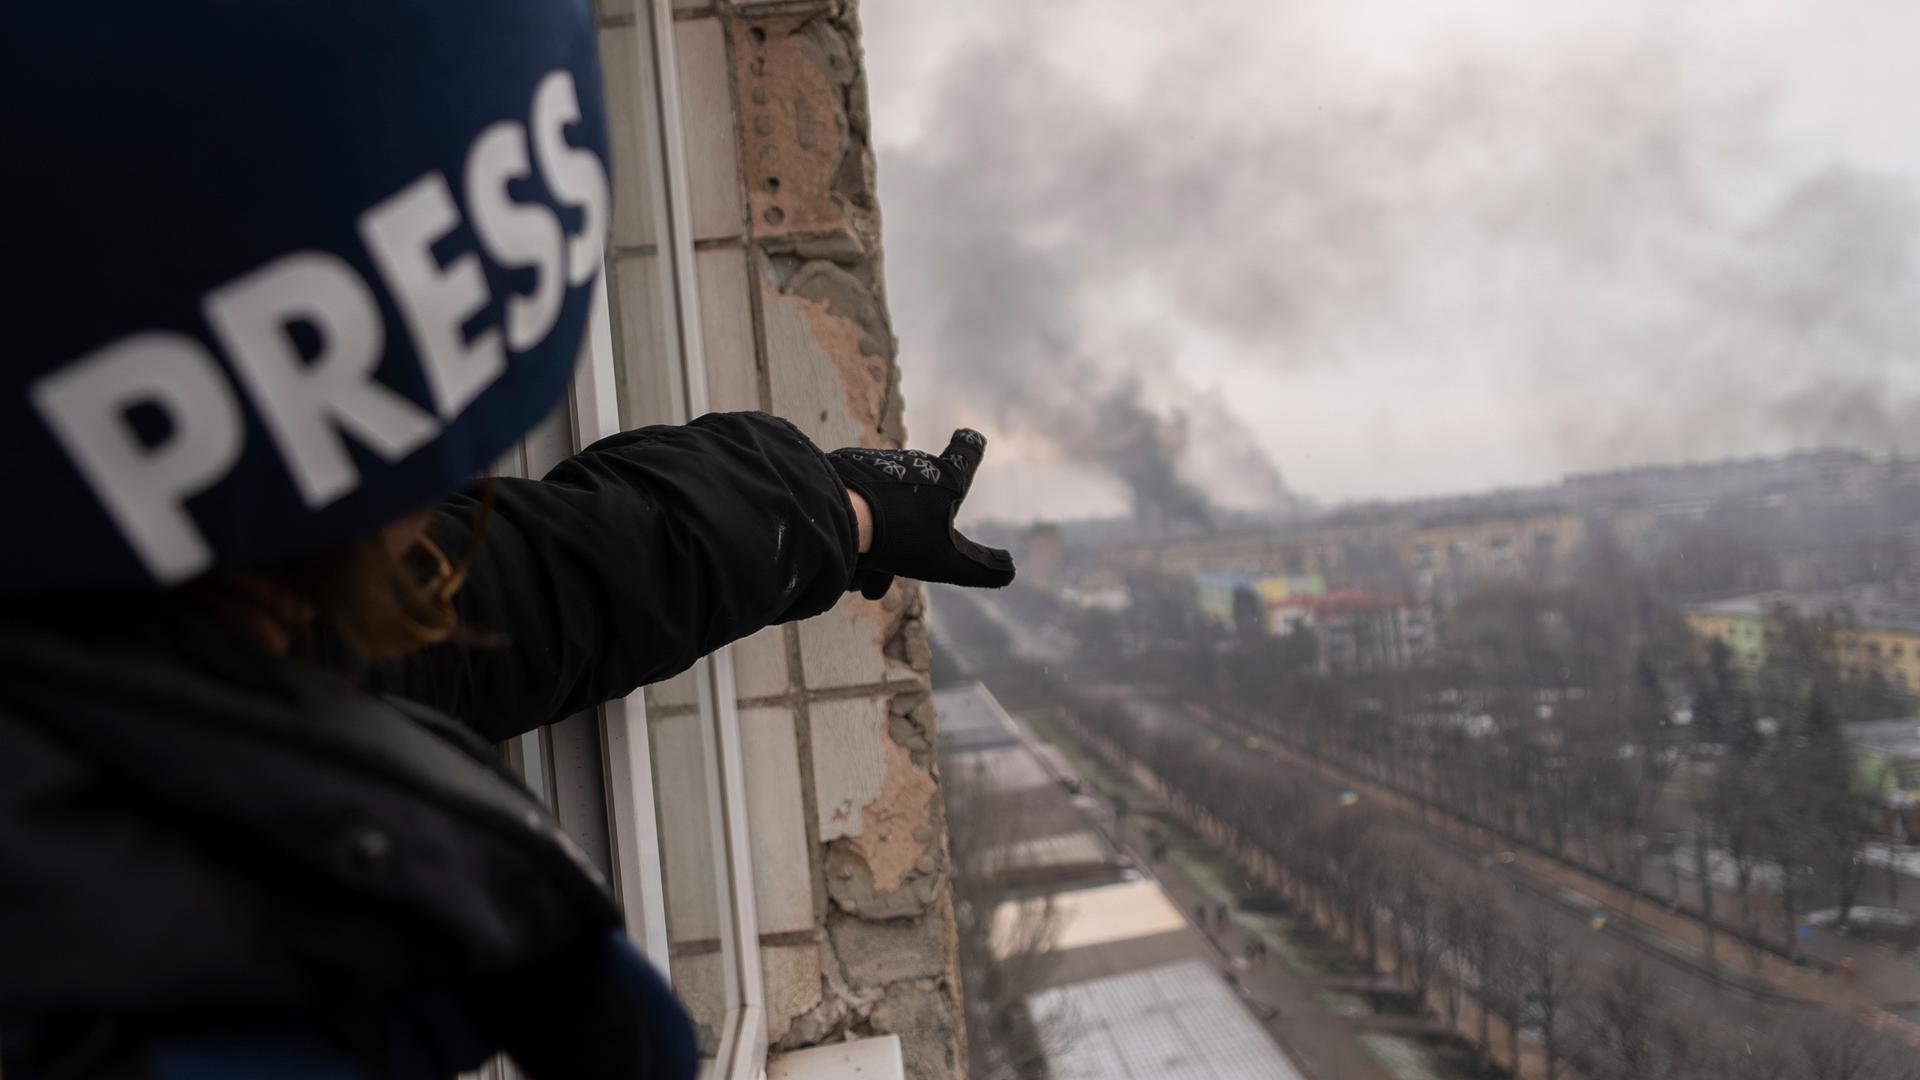 Das englische Wort "Press" für Presse steht auf dem Helm einer Fotografin, die auf Rauch über der ukrainischen Stadt Mariupol zeigt. 